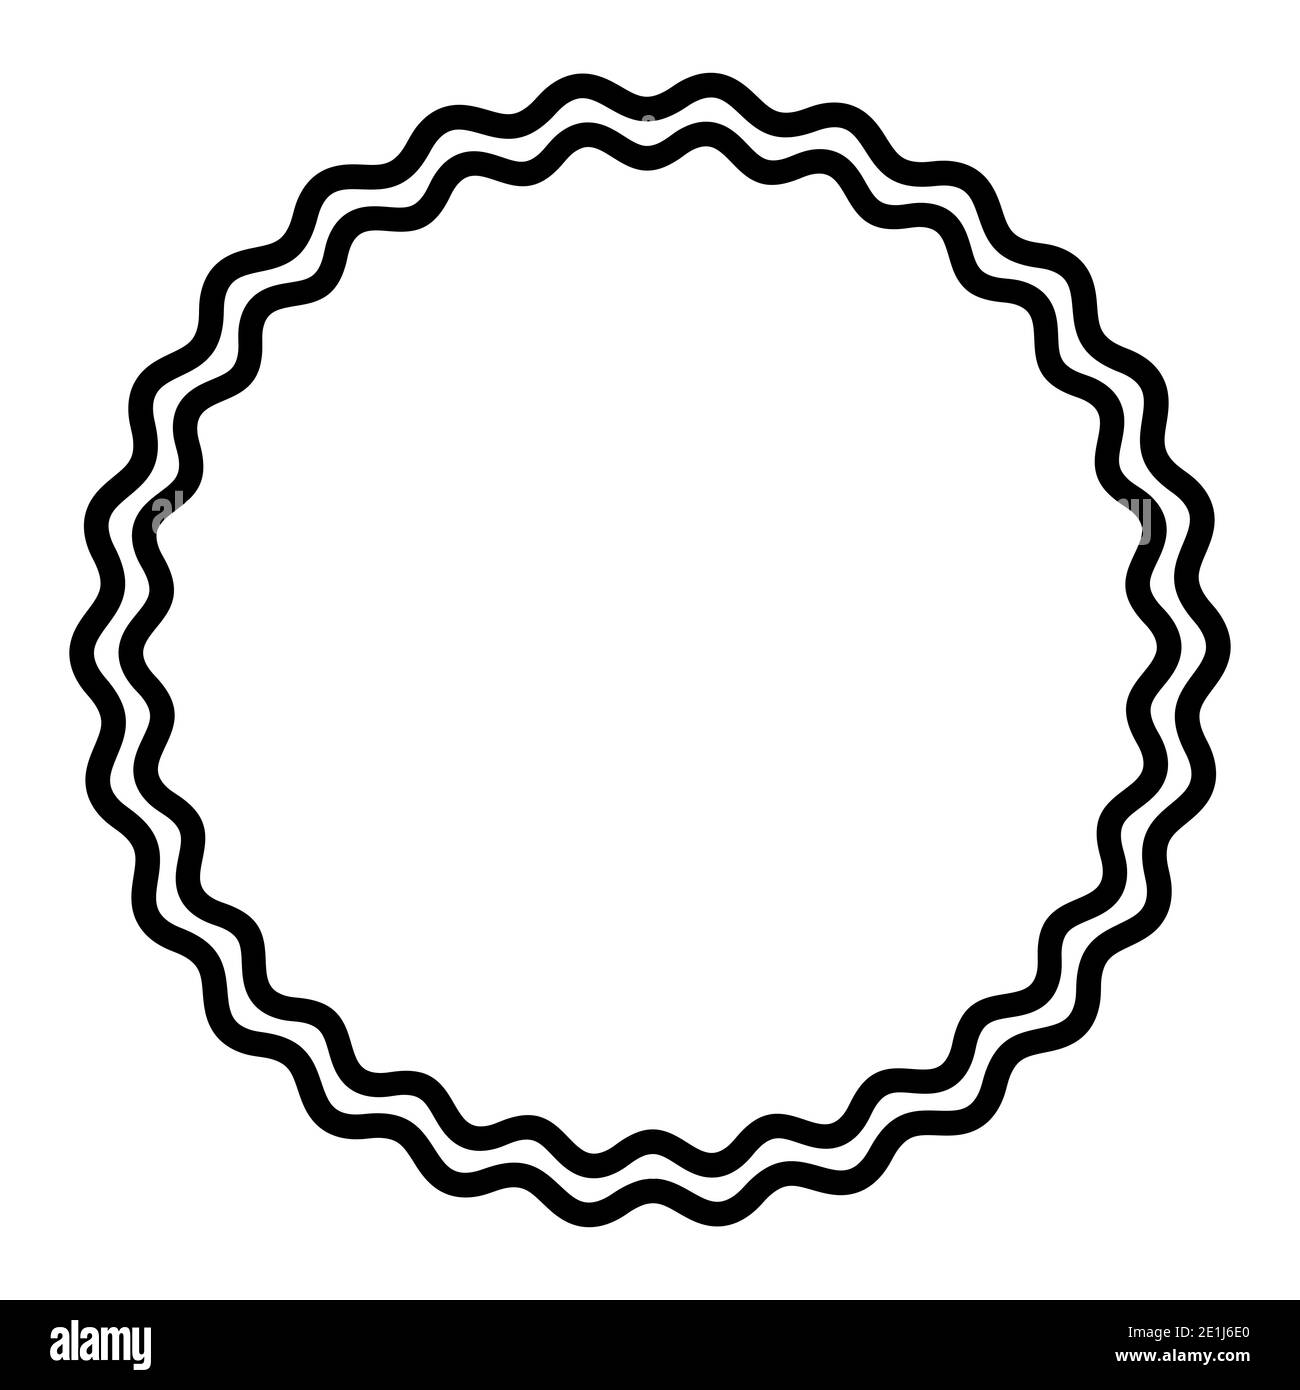 Due linee ondulate in grassetto che formano un cerchio nero. Cornice circolare, composta da due linee a serpentina nere. Cornice circolare simile a un serpente, un contorno decorativo. Foto Stock